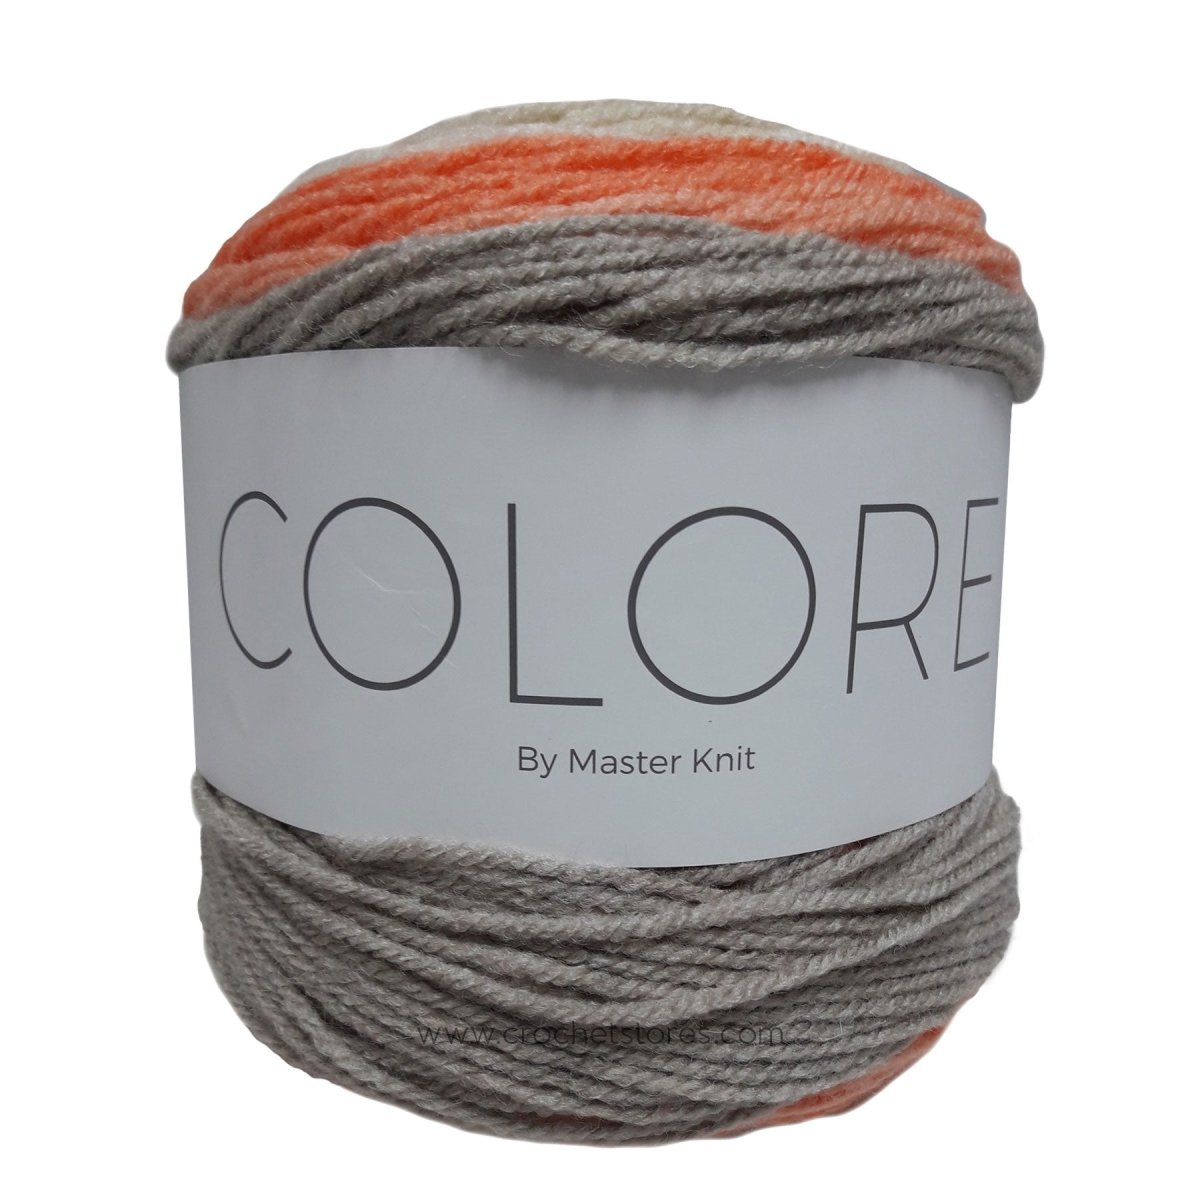 COLORE - Crochetstores9400-388